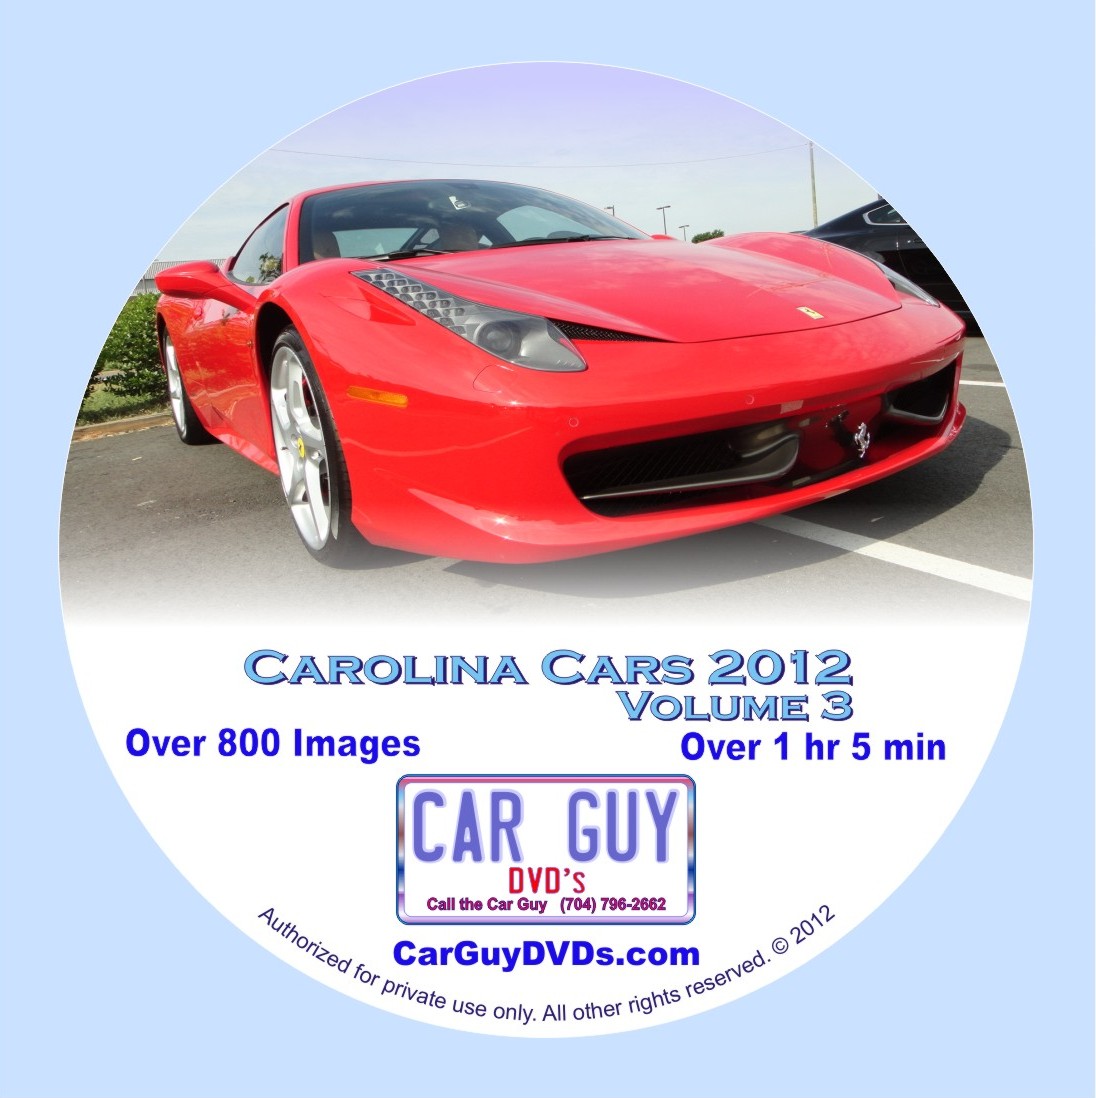 Carolina Cars 2012 Volume 3